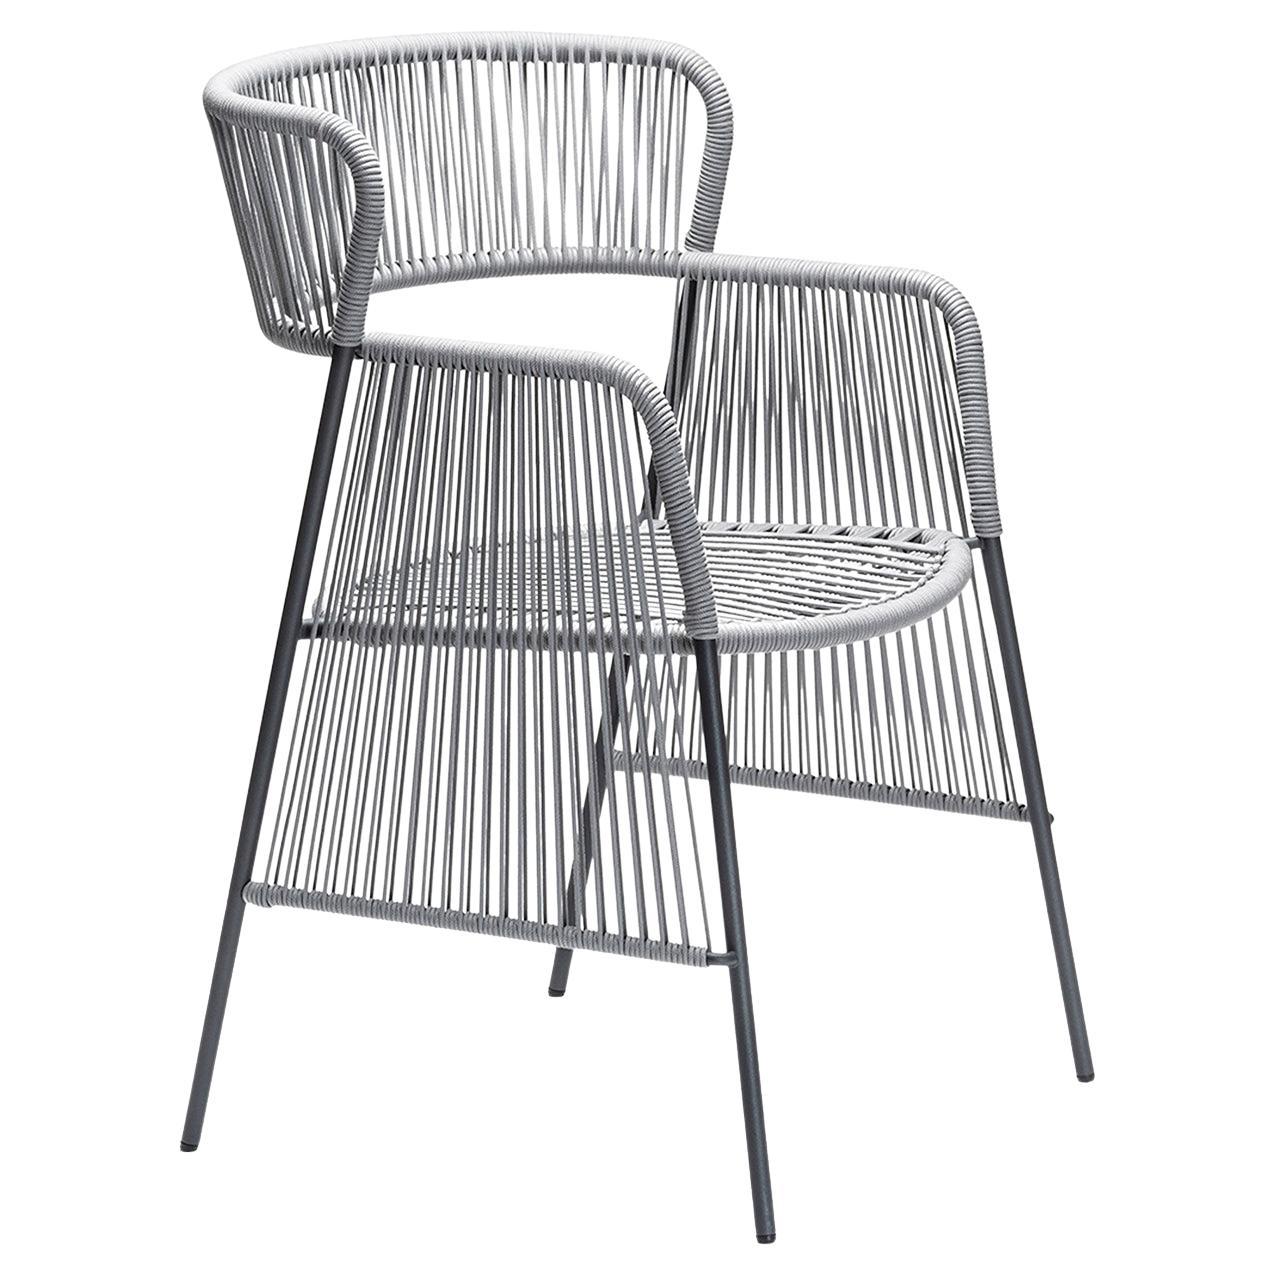 Altana SP Gray Chair by Antonio De Marco